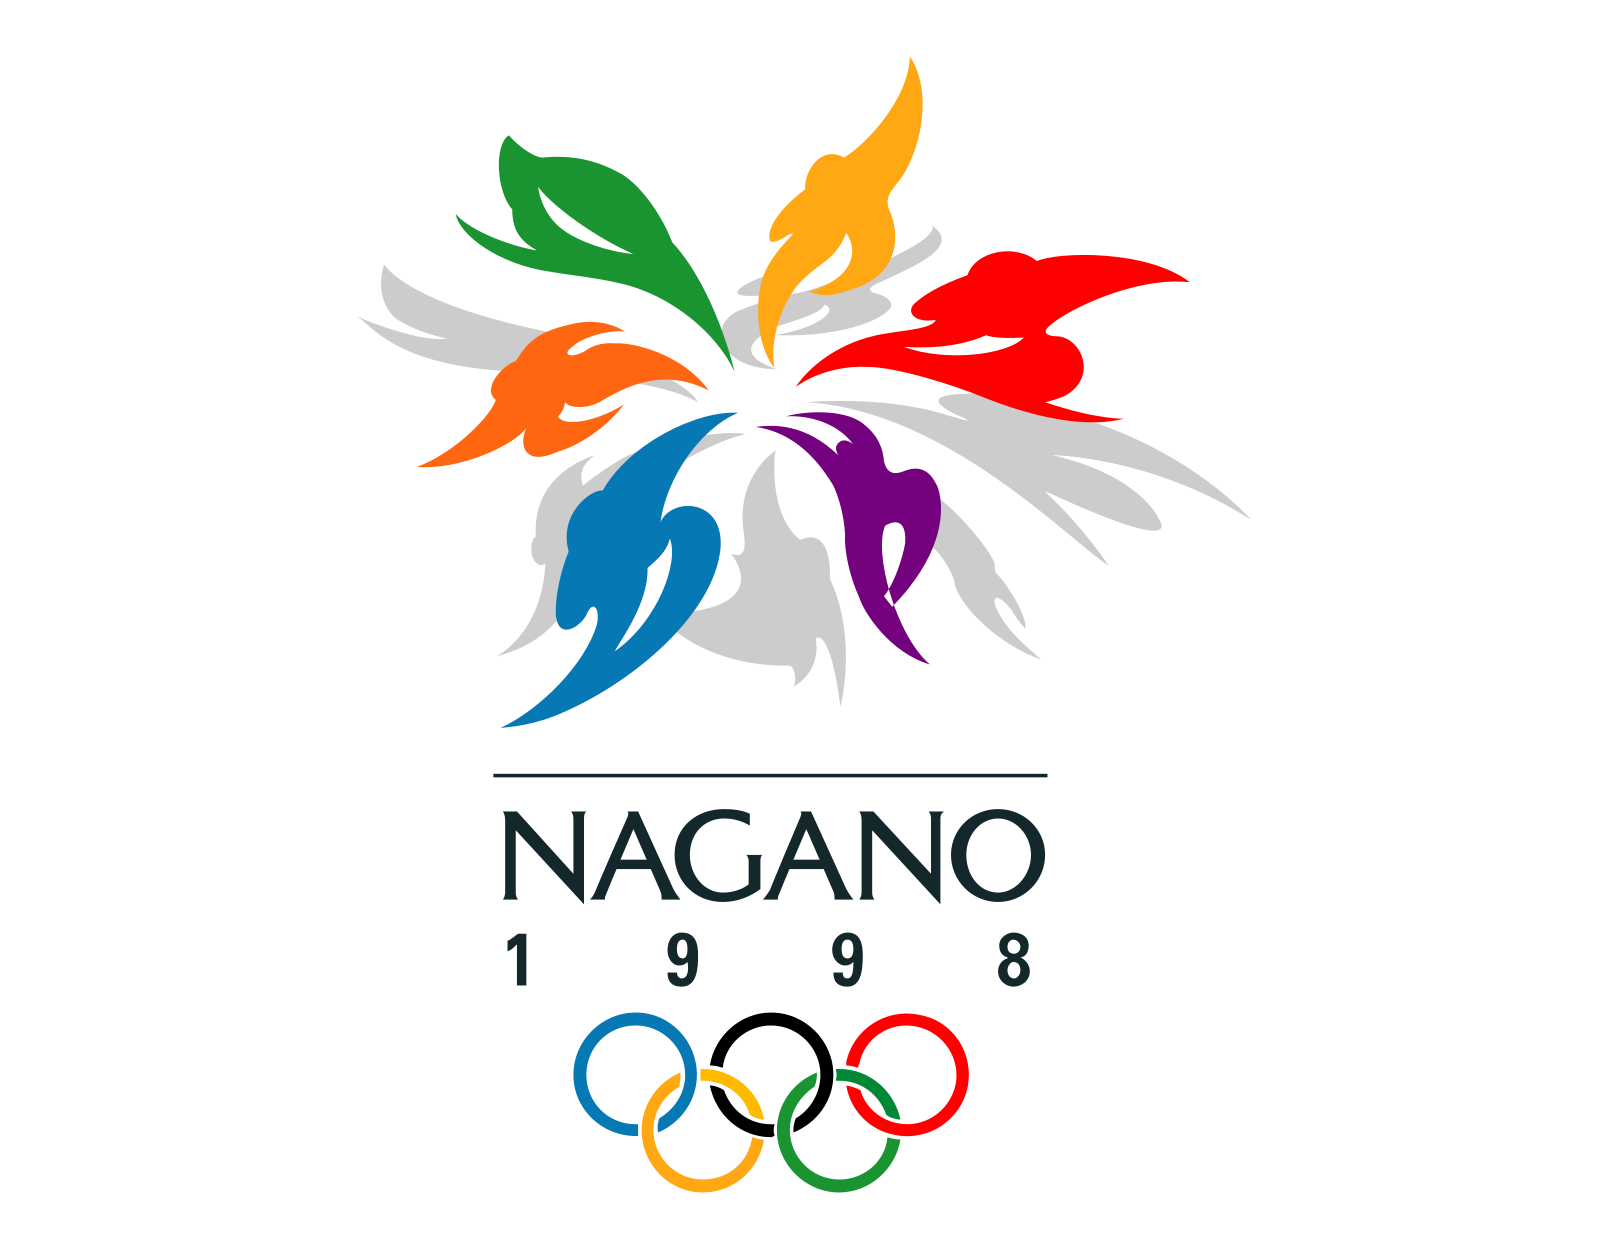 Зимняя олимпийская игра 1998 года. Олимпийские игры в Нагано 1998. 1998 Открылись XVIII зимние Олимпийские игры в Нагано (Япония). XVIII зимние Олимпийские игры 1998. Nagano 1998 Олимпийский игры.